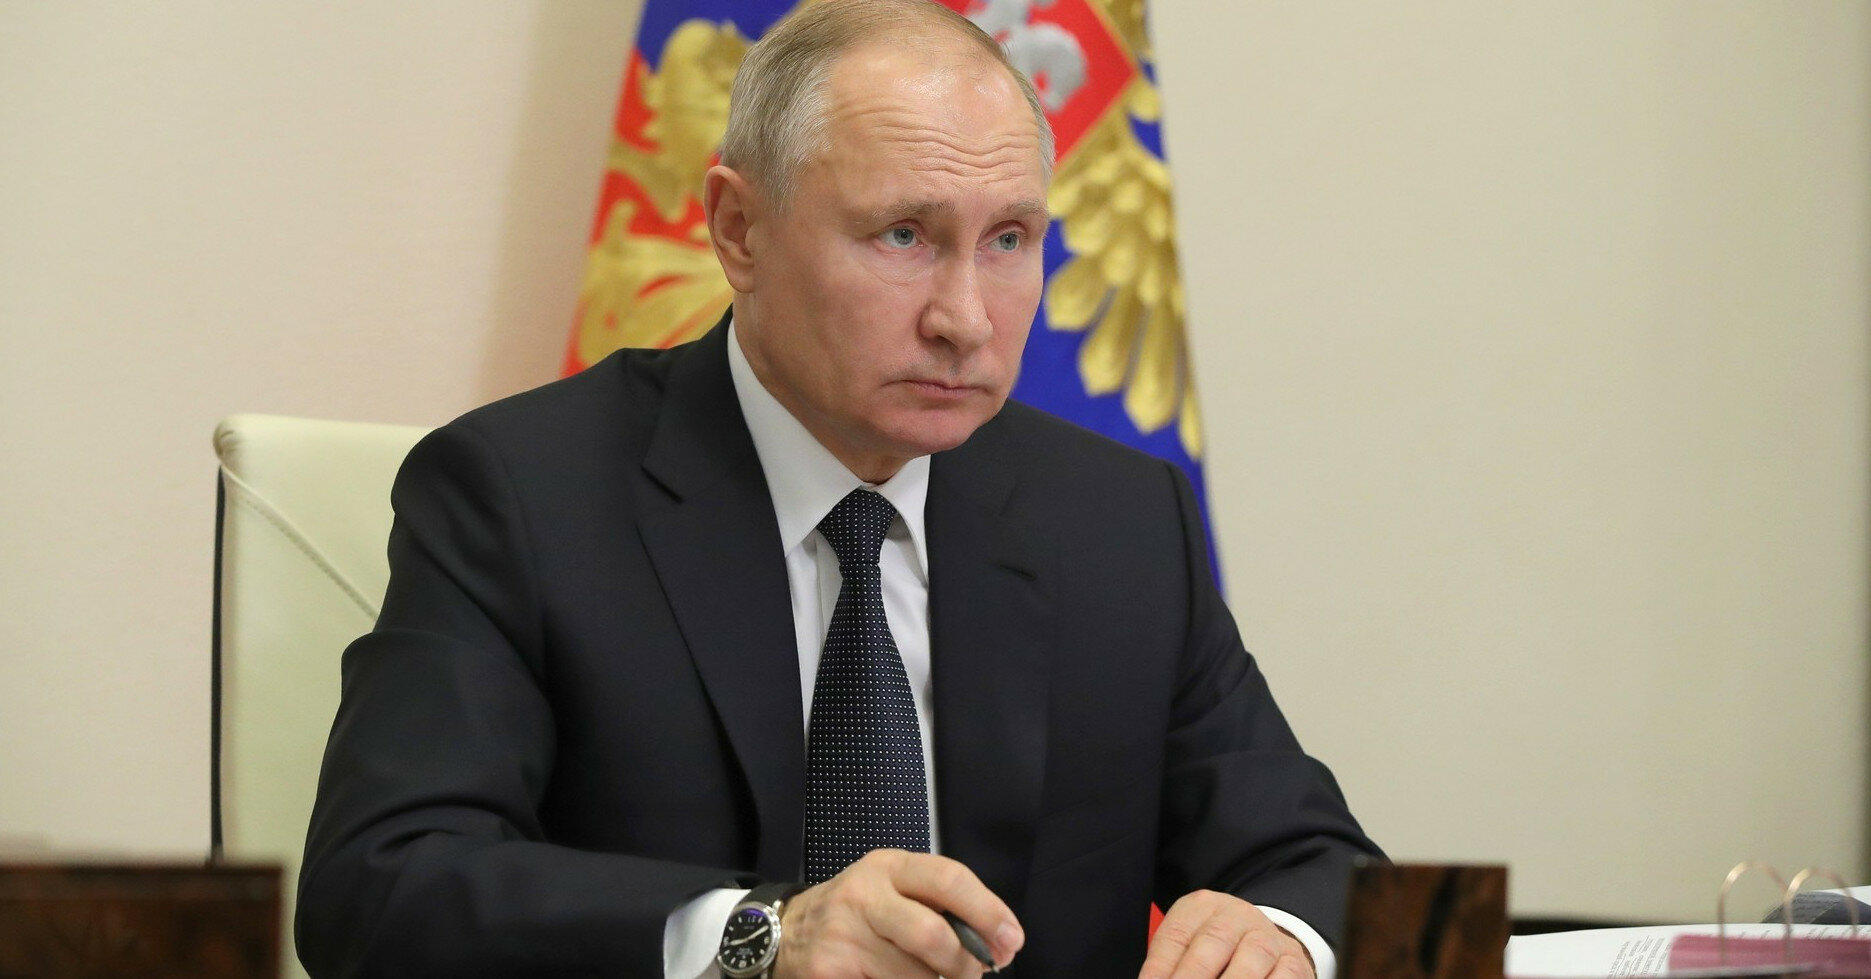 Лідер РФ назвав Медведчука "справжнім націоналістом"